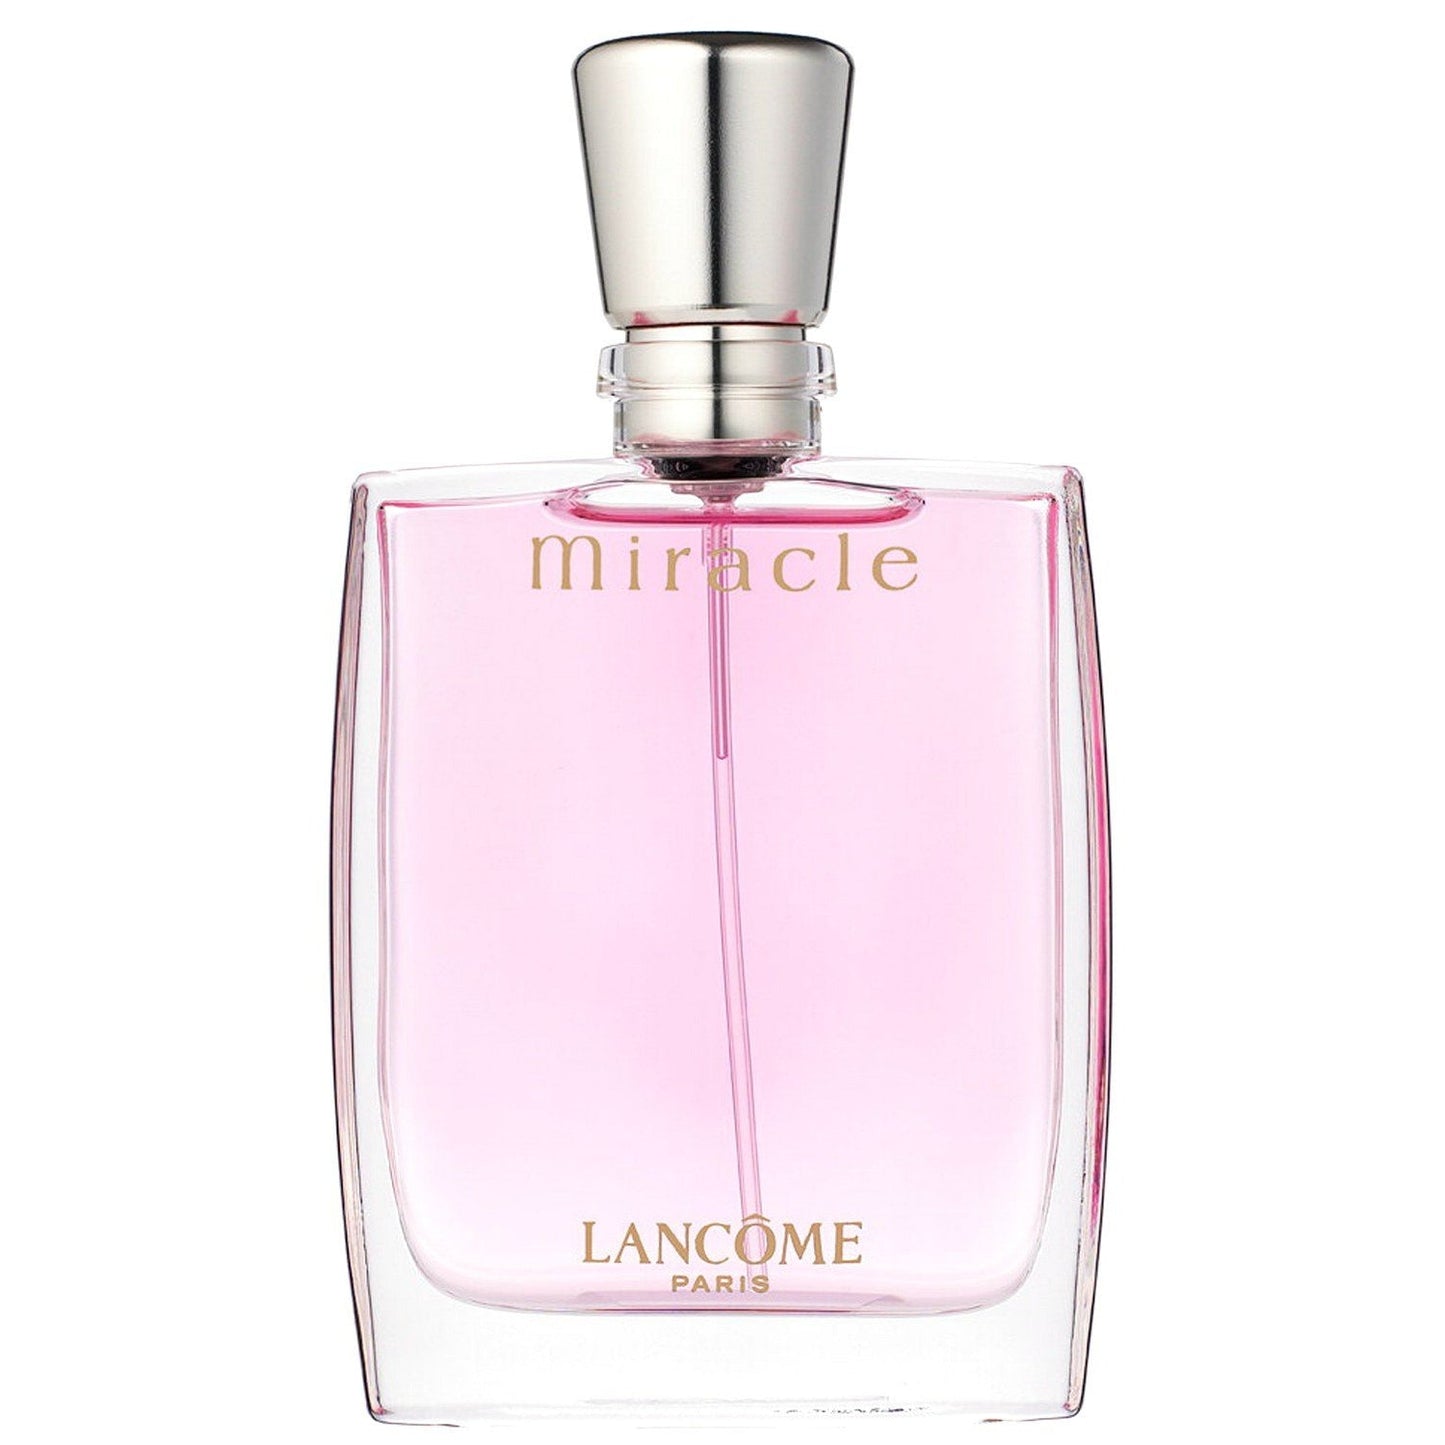 LANCOME - Miracle Eau De Parfum, 3.4 oz